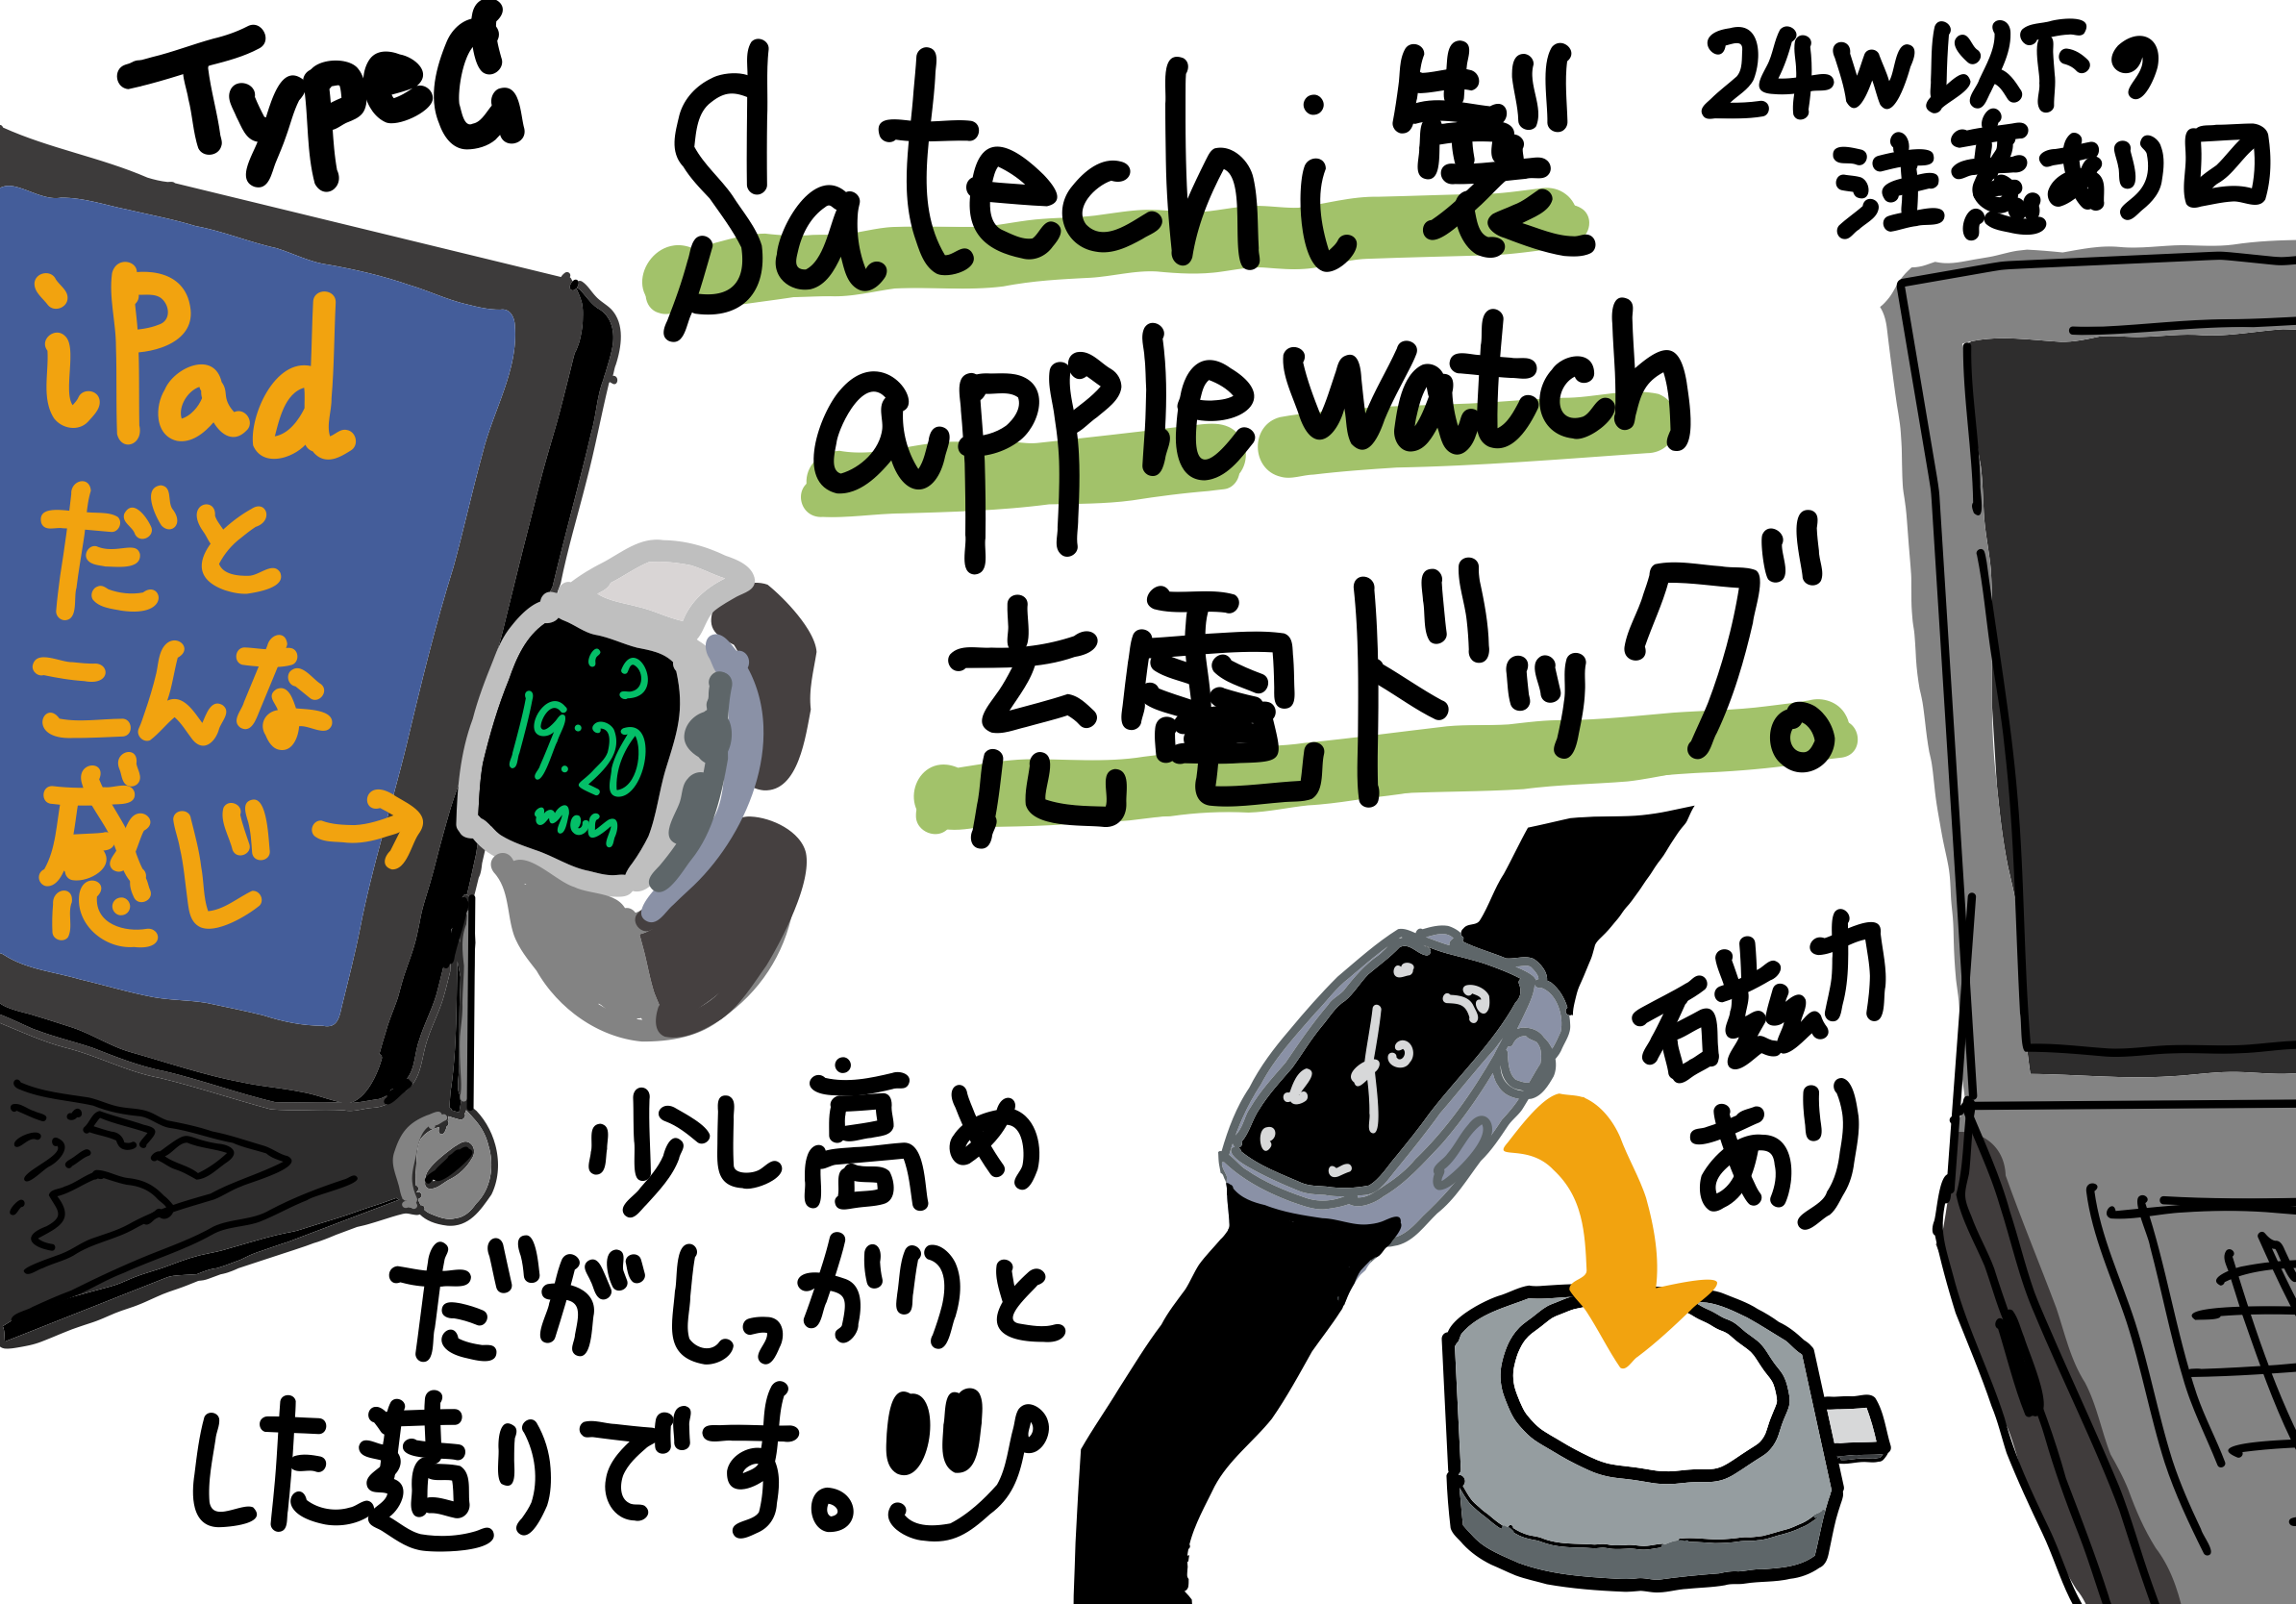 Satechi USB-C Apple Watch 充電ドックレビュー